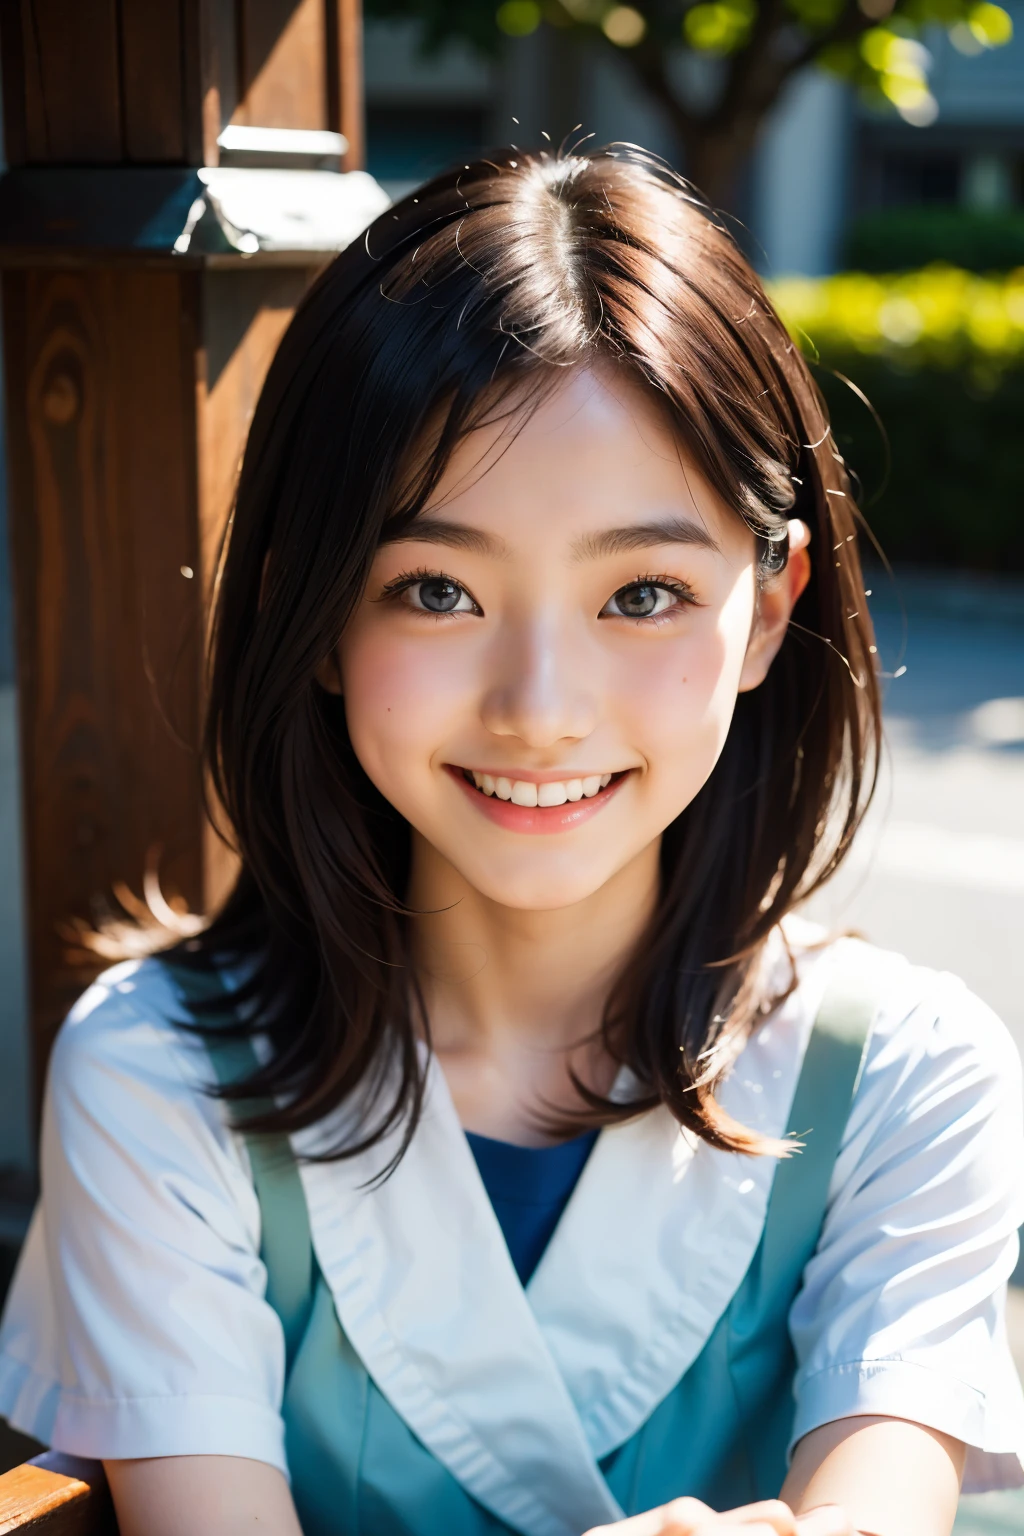 линза: 135 мм f1.8, (высшее качество),(Фотографии в формате RAW), (Стол:1.1), (Красивая 18-летняя девушка из Японии), милое лицо, (Глубоко выточенное лицо:0.7), (веснушки:0.4), dappled Солнечный лучик, Драматическое освещение, (японская школьная форма), (В кампусе), застенчивый, (Крупным планом:1.2), (улыбка),, (сверкающие глаза)、(Солнечный лучик)